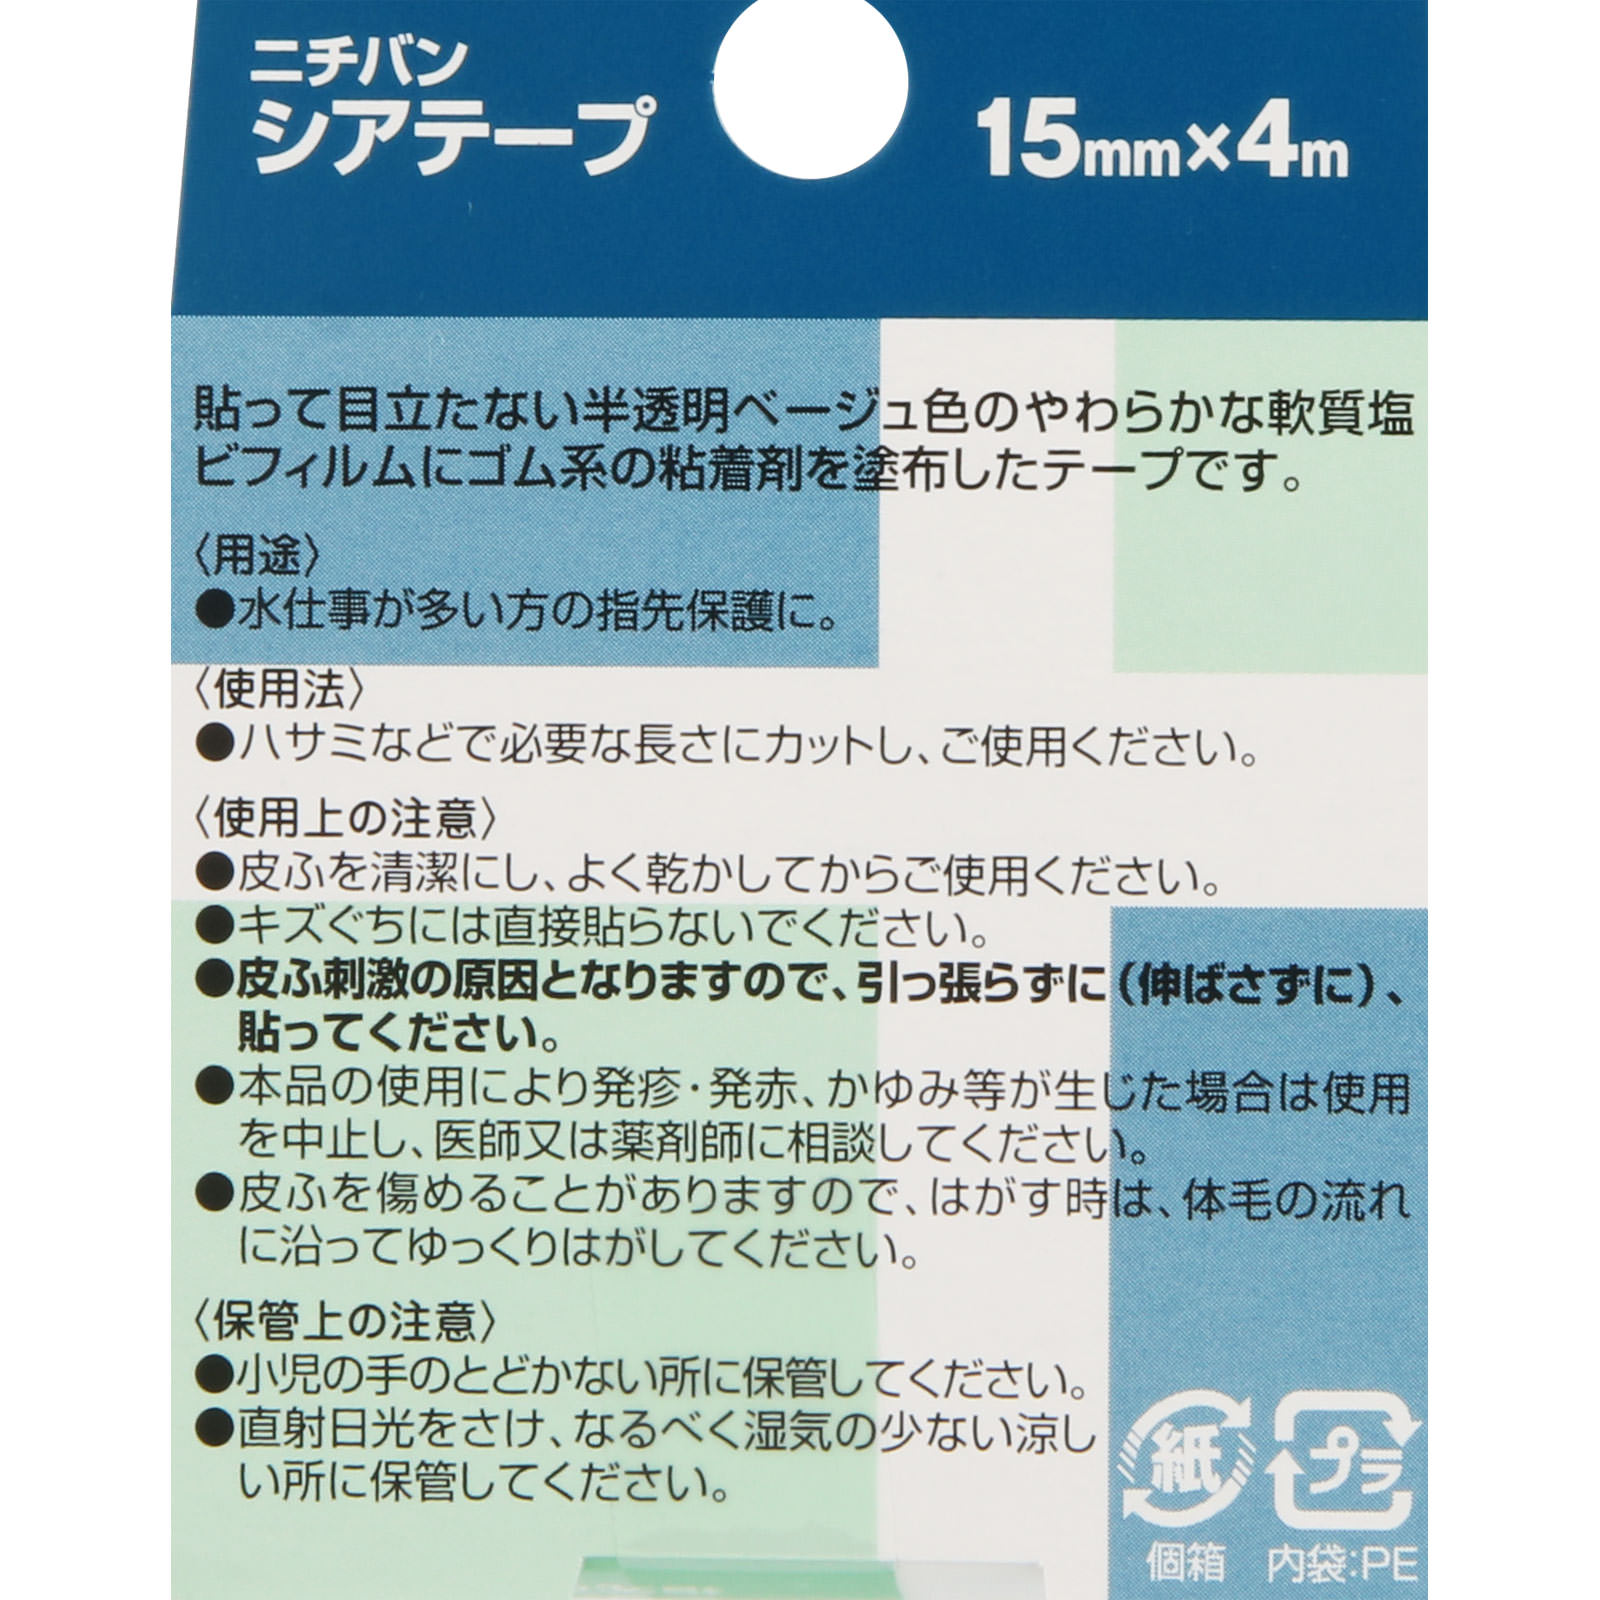 ニチバン シアテープ 4m: 医薬品・衛生用品 Tomod's ONLINE SHOP